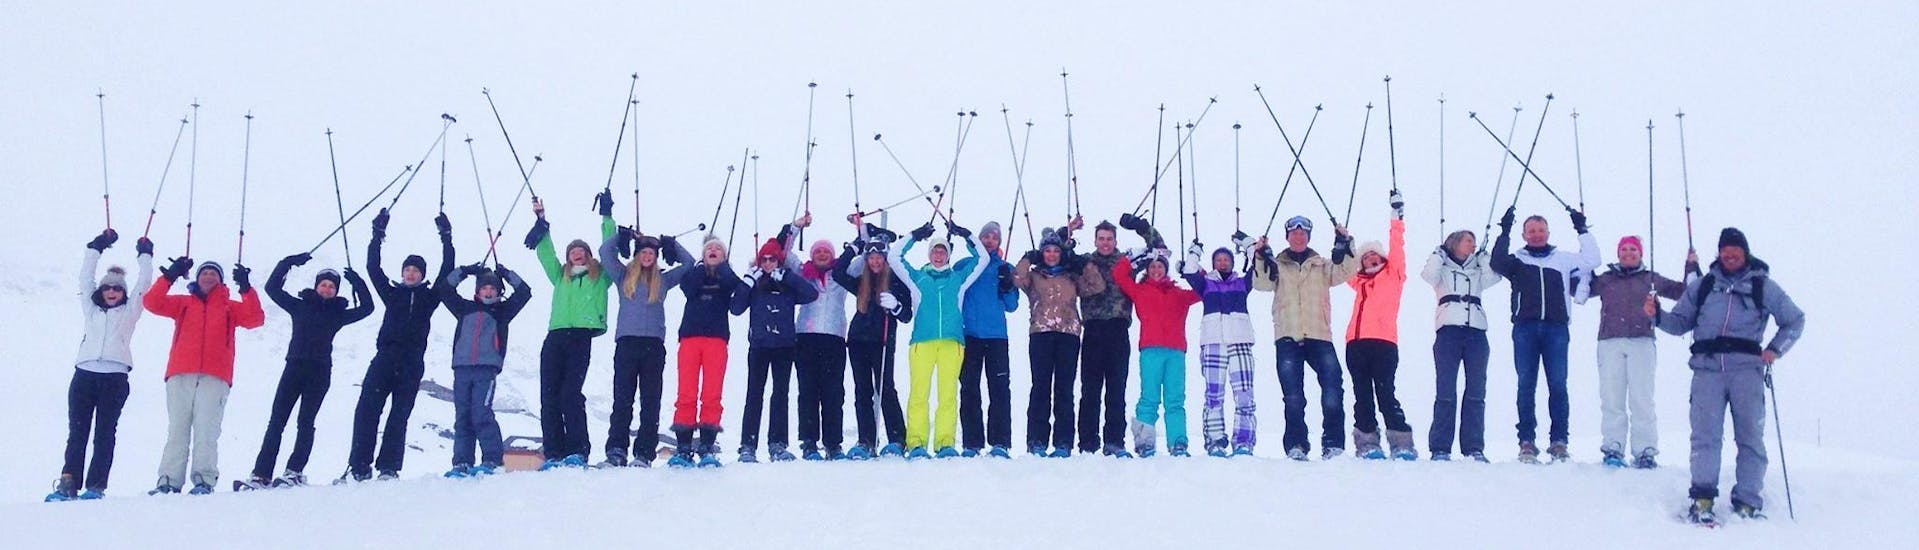 Les skieurs sont debout les uns à côté des autres au sommet d'une piste, leurs bâtons en l'air, attendant de commencer leur Cours de ski Adultes (dès 14 ans) pour Tous niveaux - Vacances avec l'école de ski Evolution 2 Val Thorens.